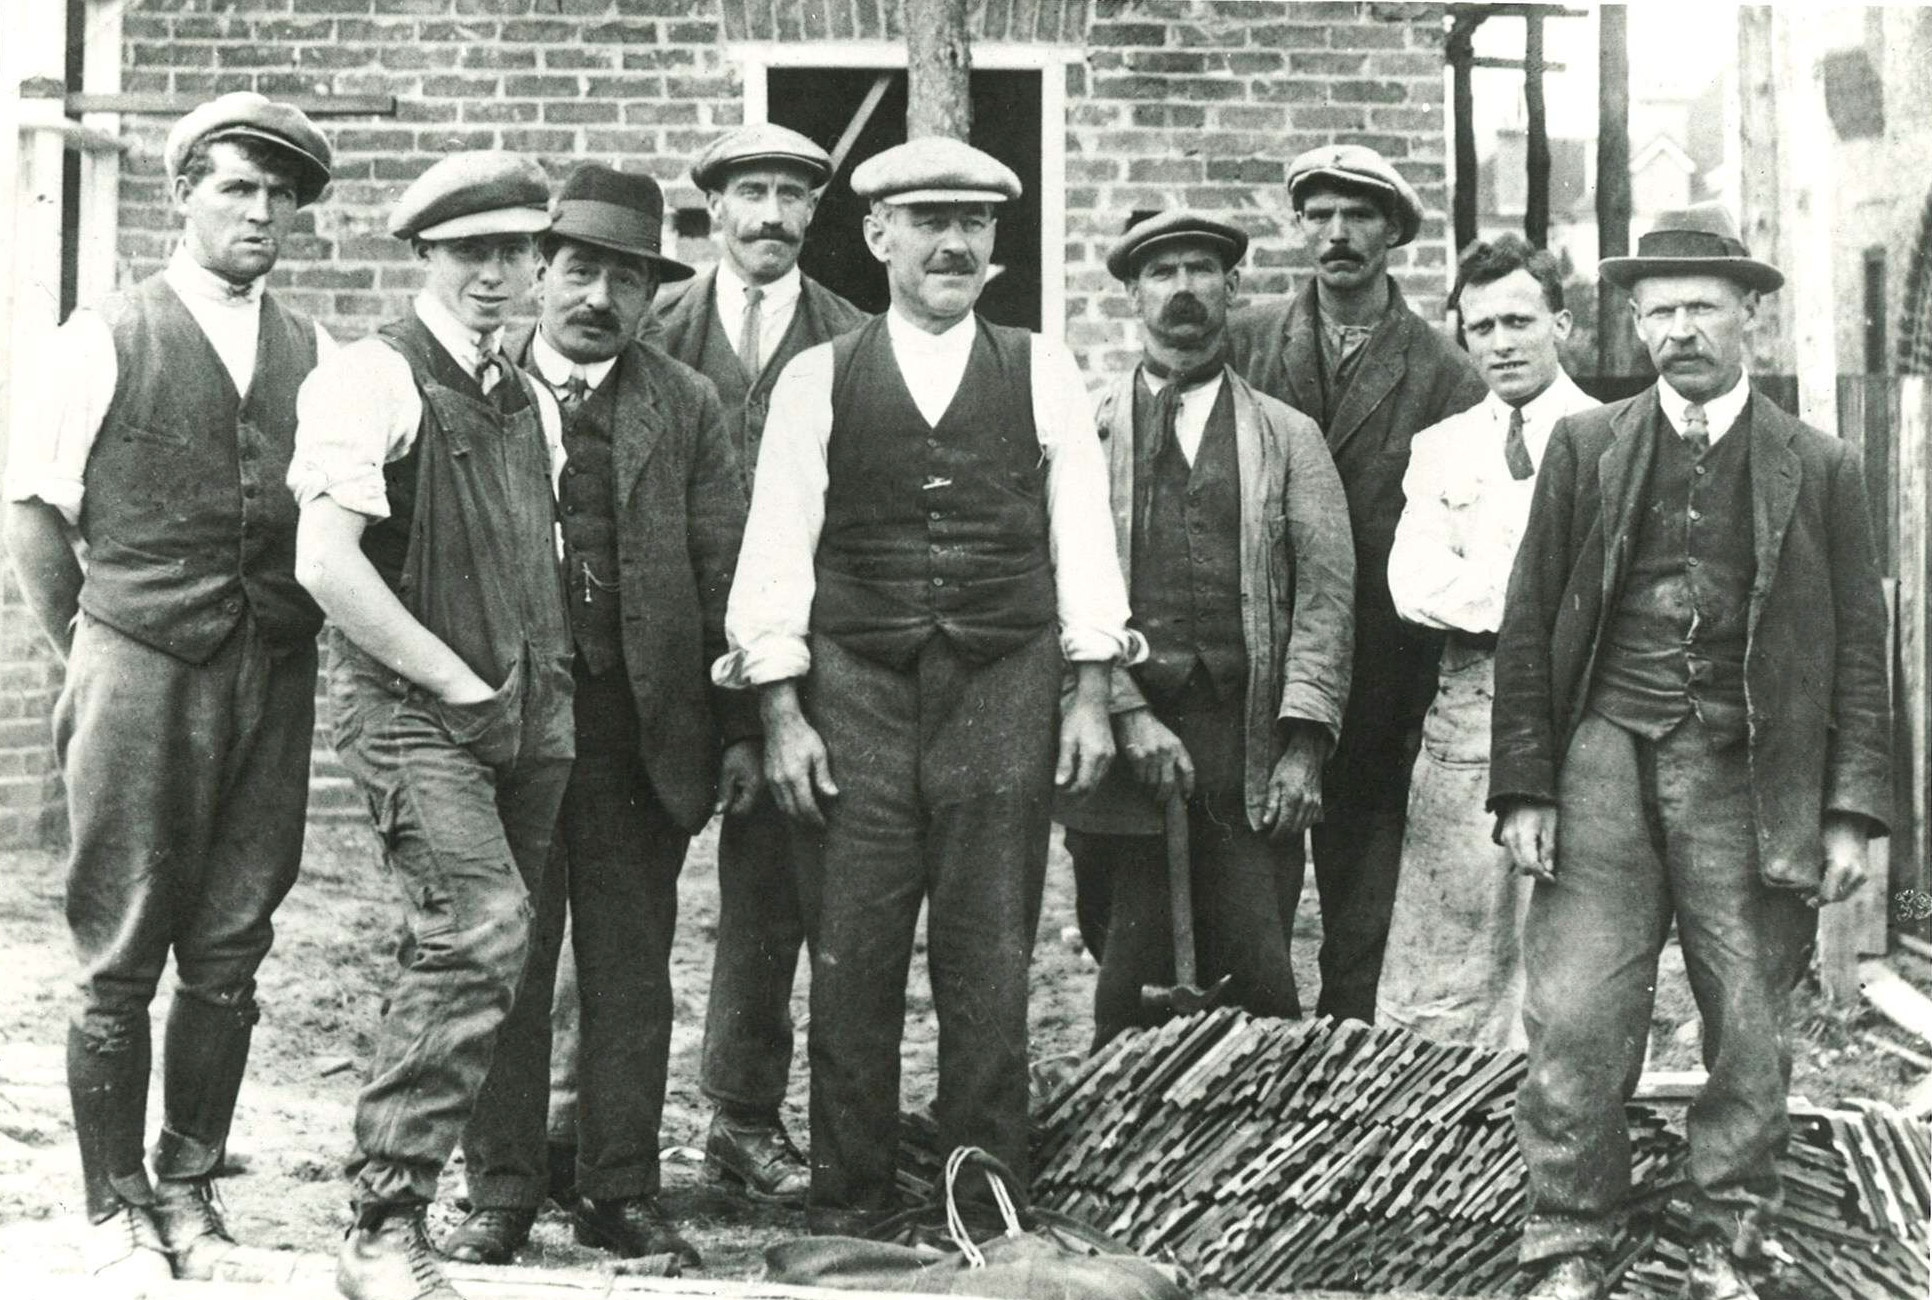 James Drewitt & Employees, 1919');